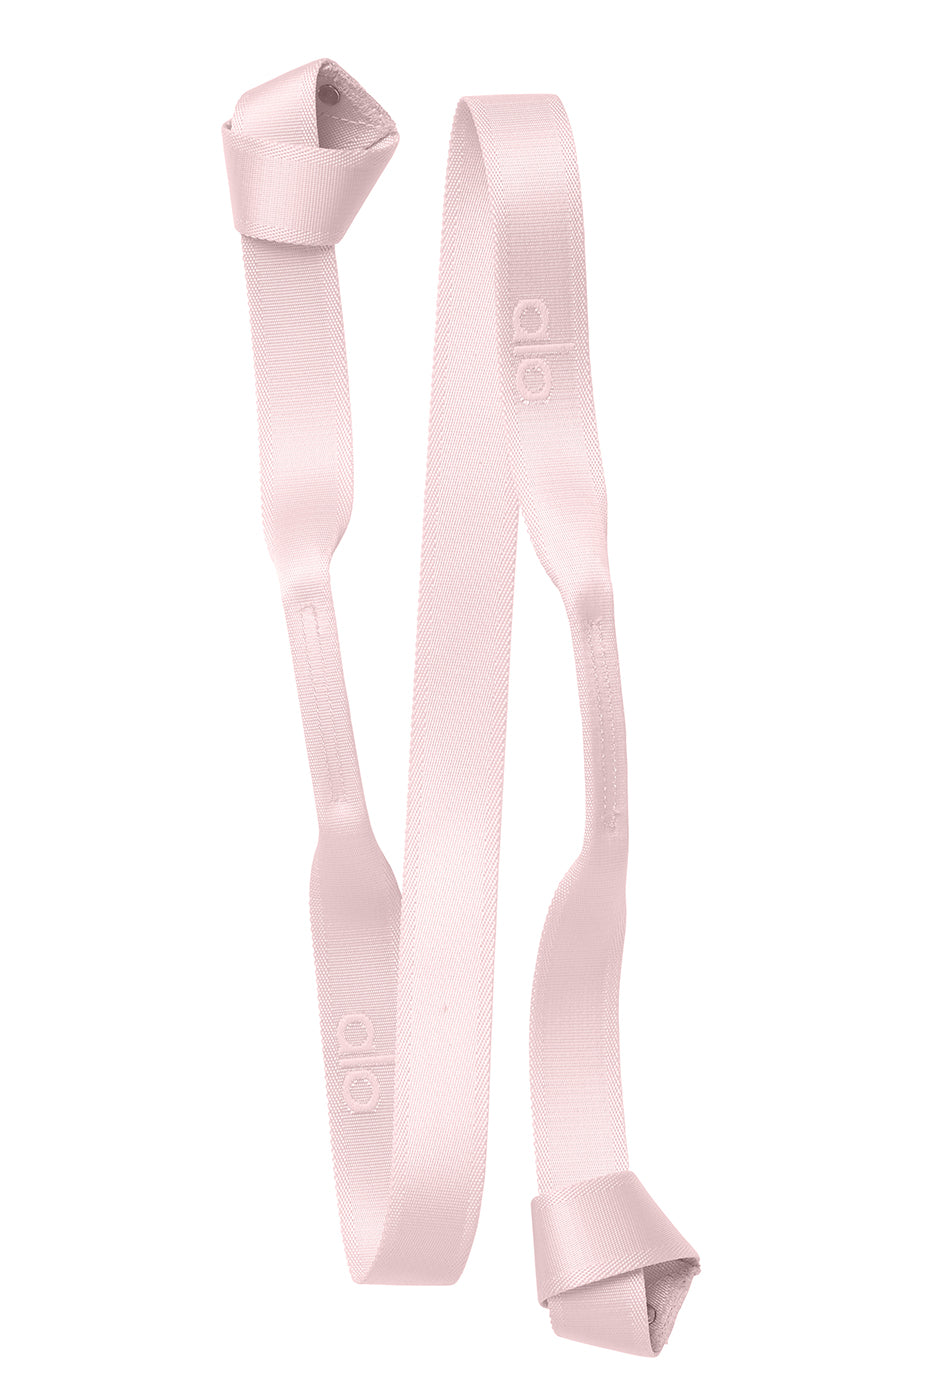 Alo Yoga Strap in Powder Pink by Alo Yoga - International Design Forum